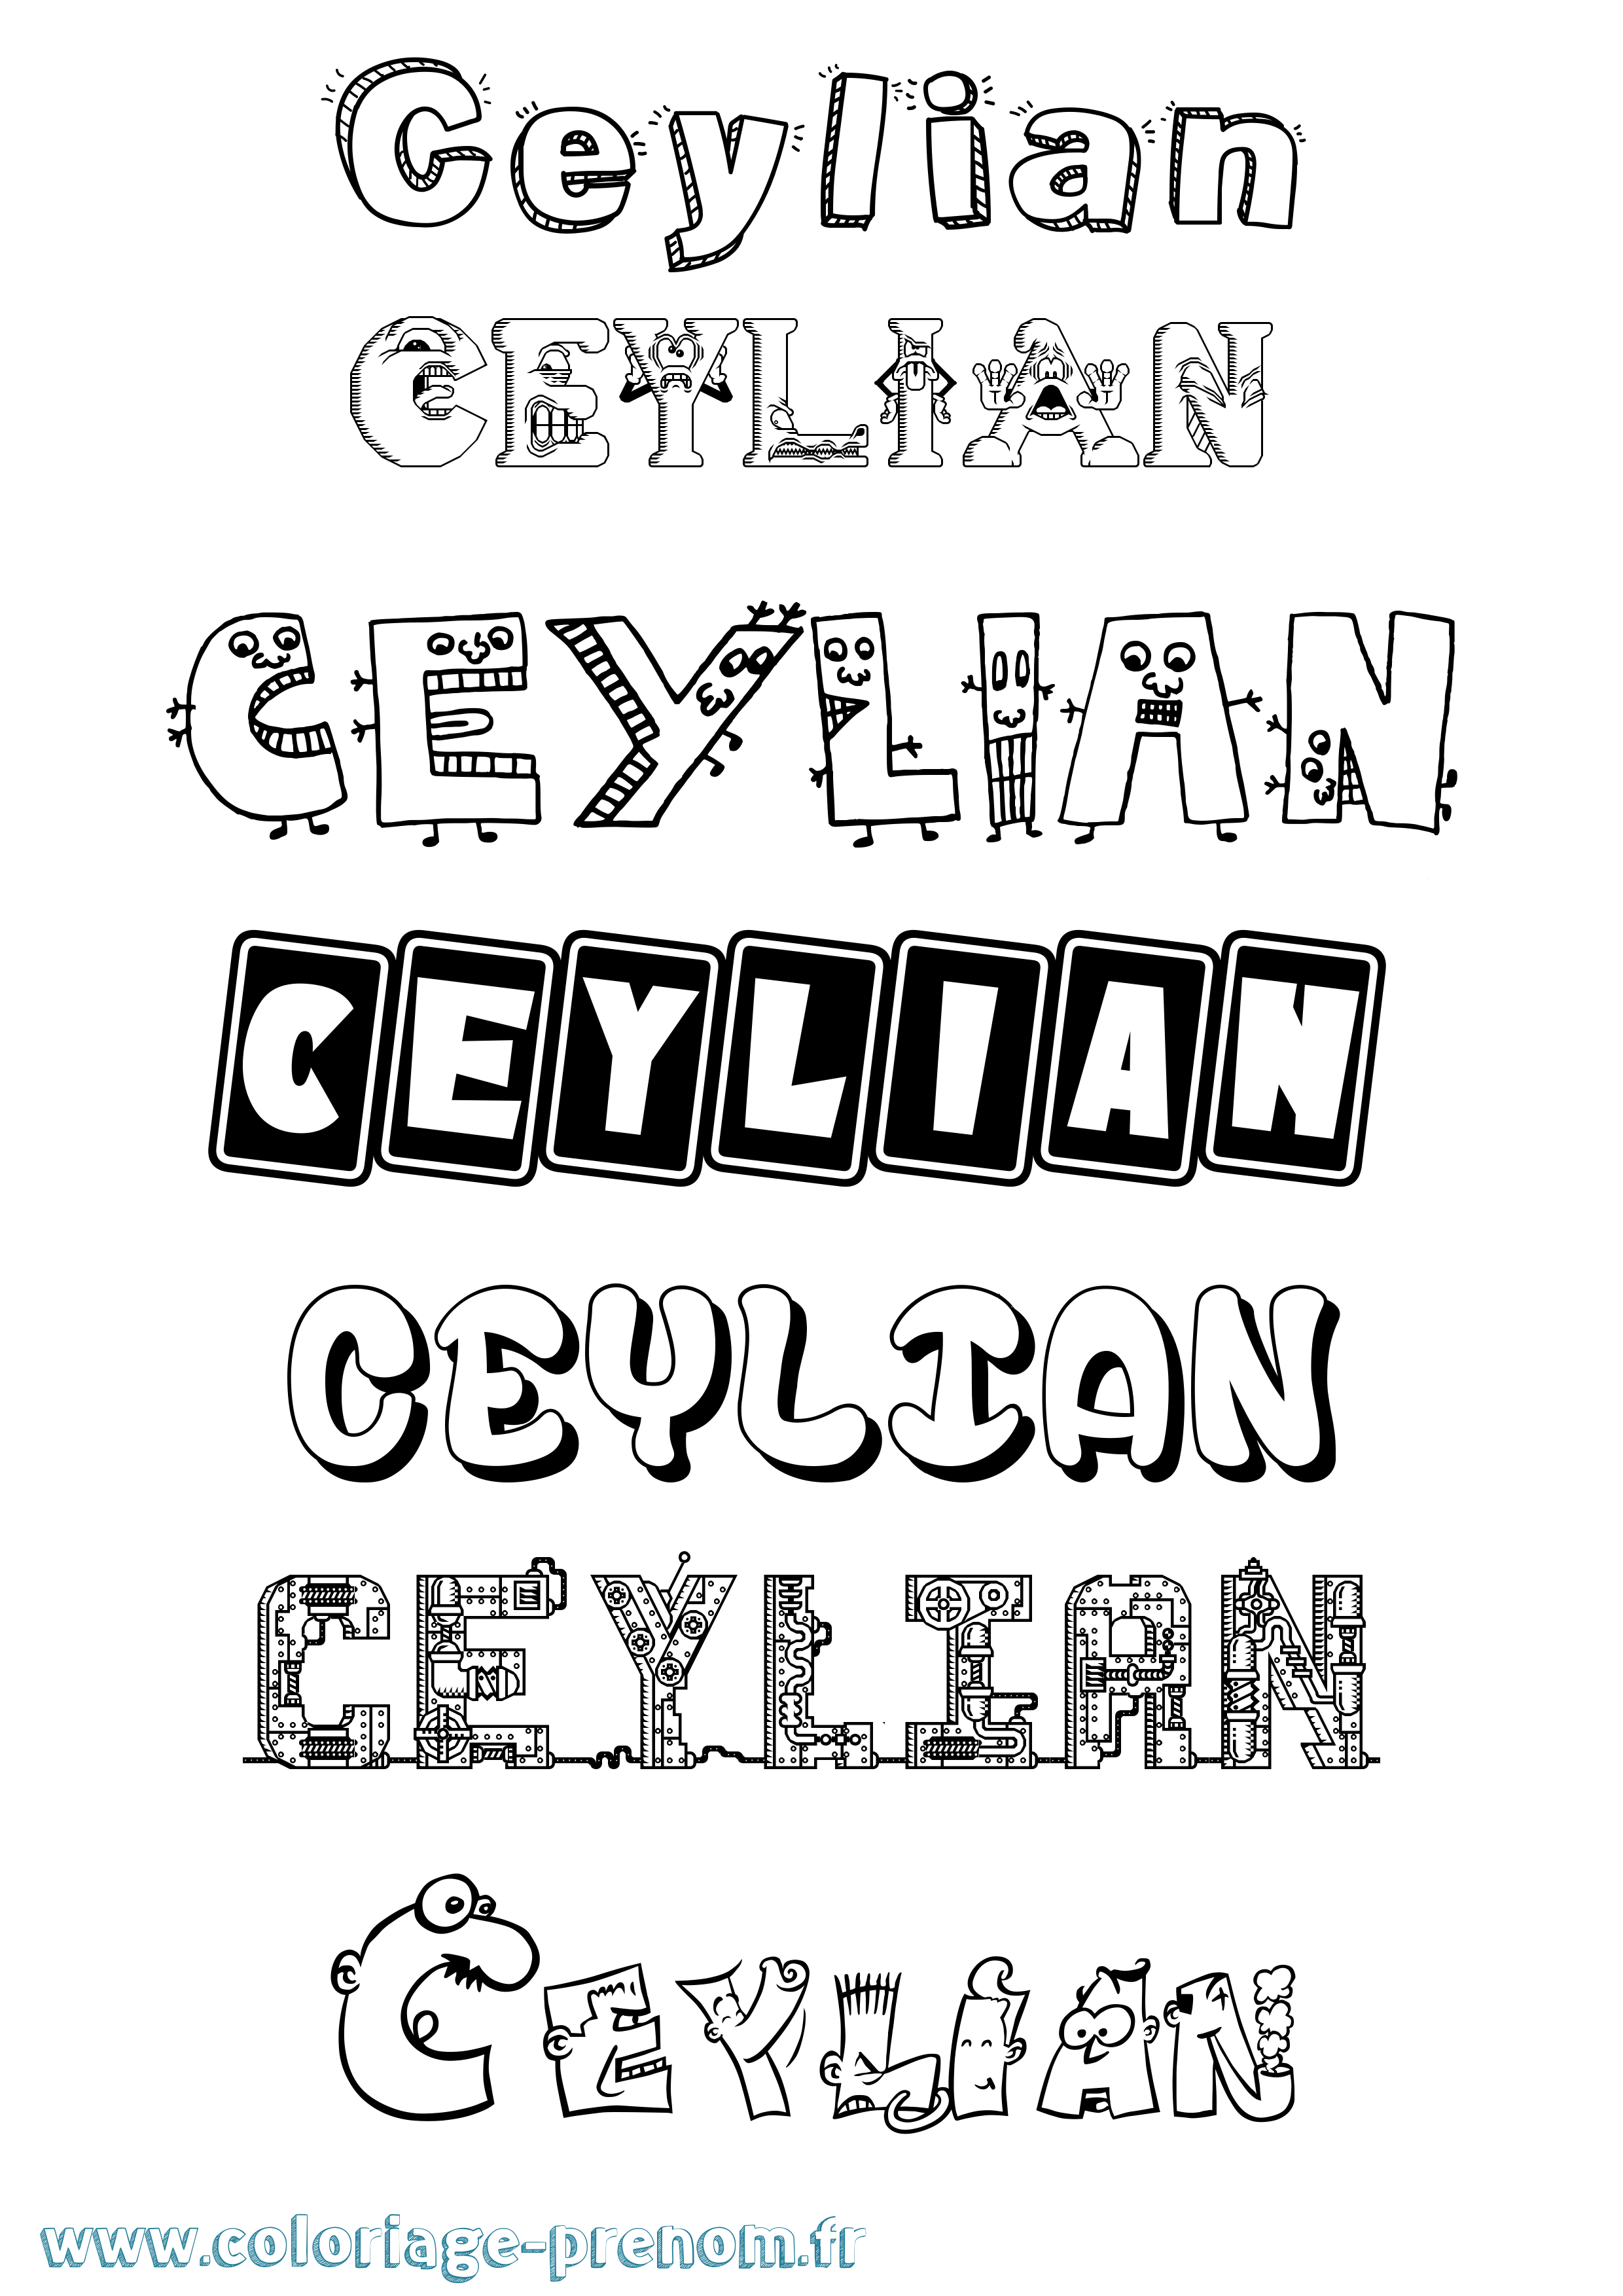 Coloriage prénom Ceylian Fun